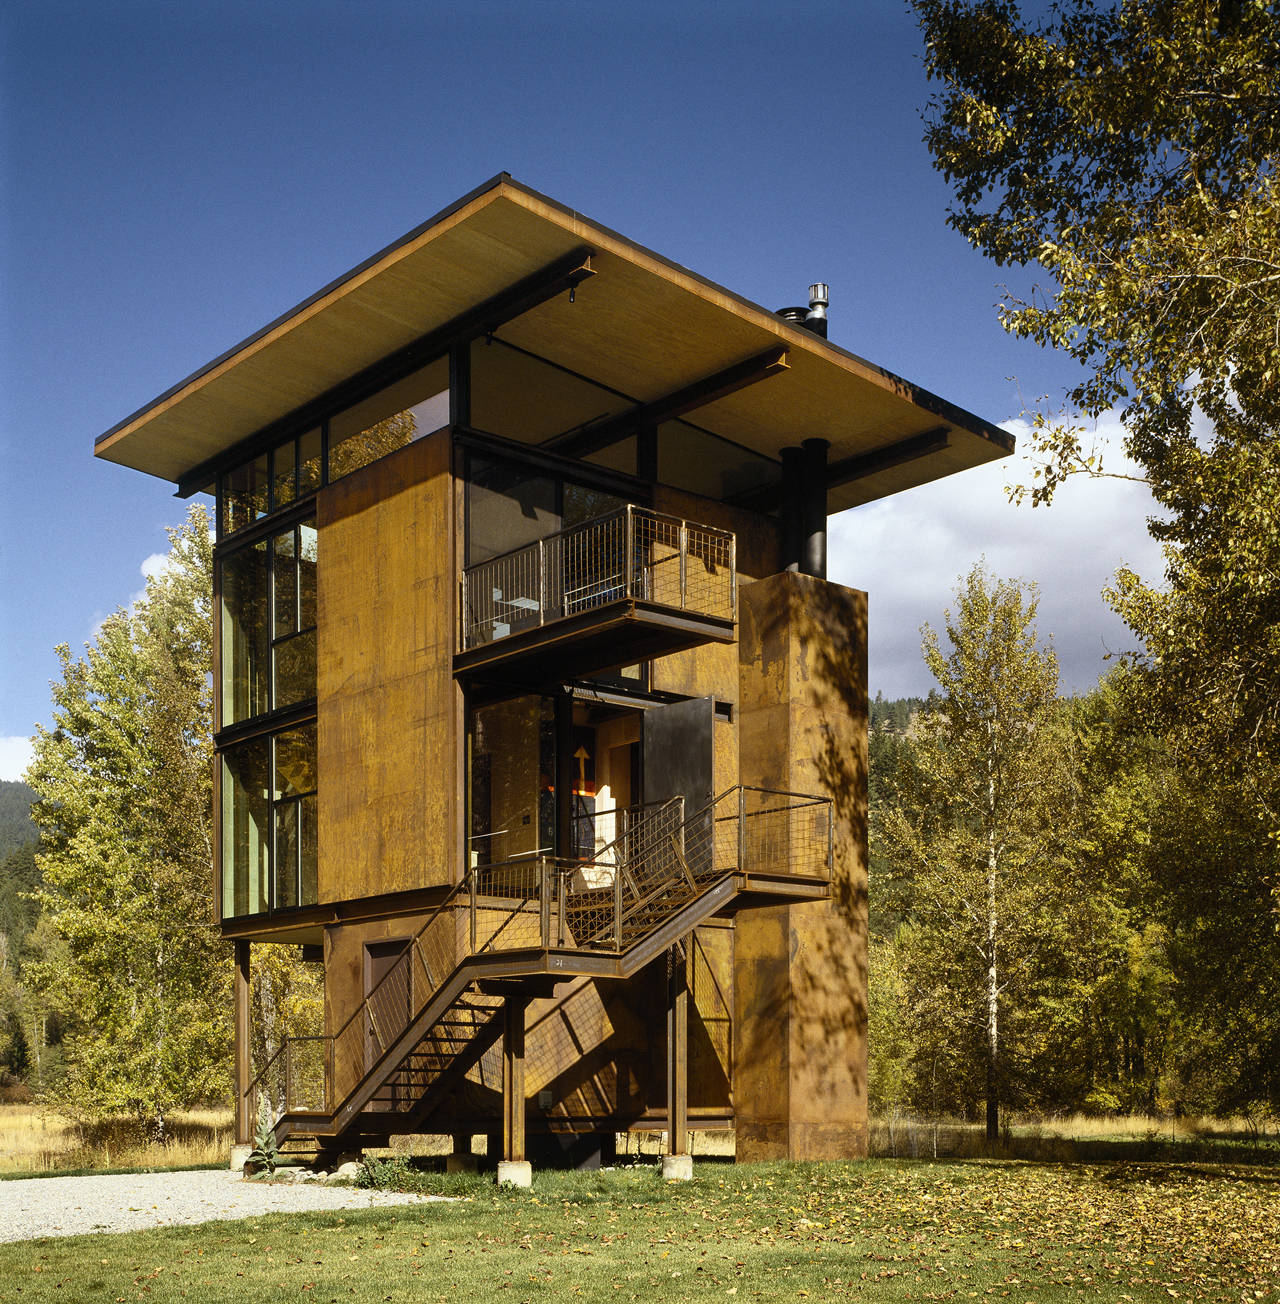 Delta Shelter By Olson Kundig Architects Homedezen